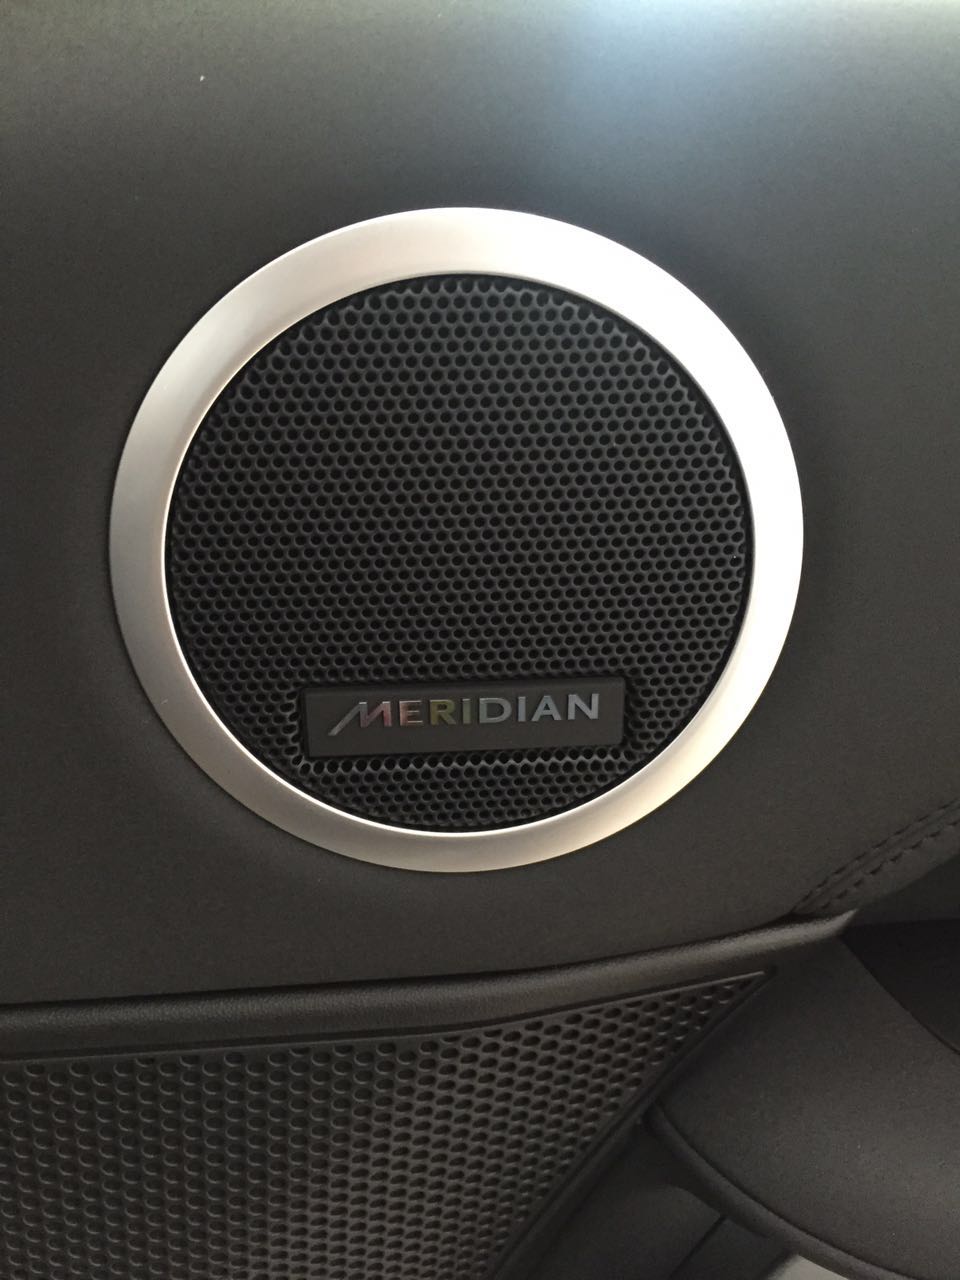 meridian™是全球高品质音响领导品牌,该系统采用10个扬声器和1